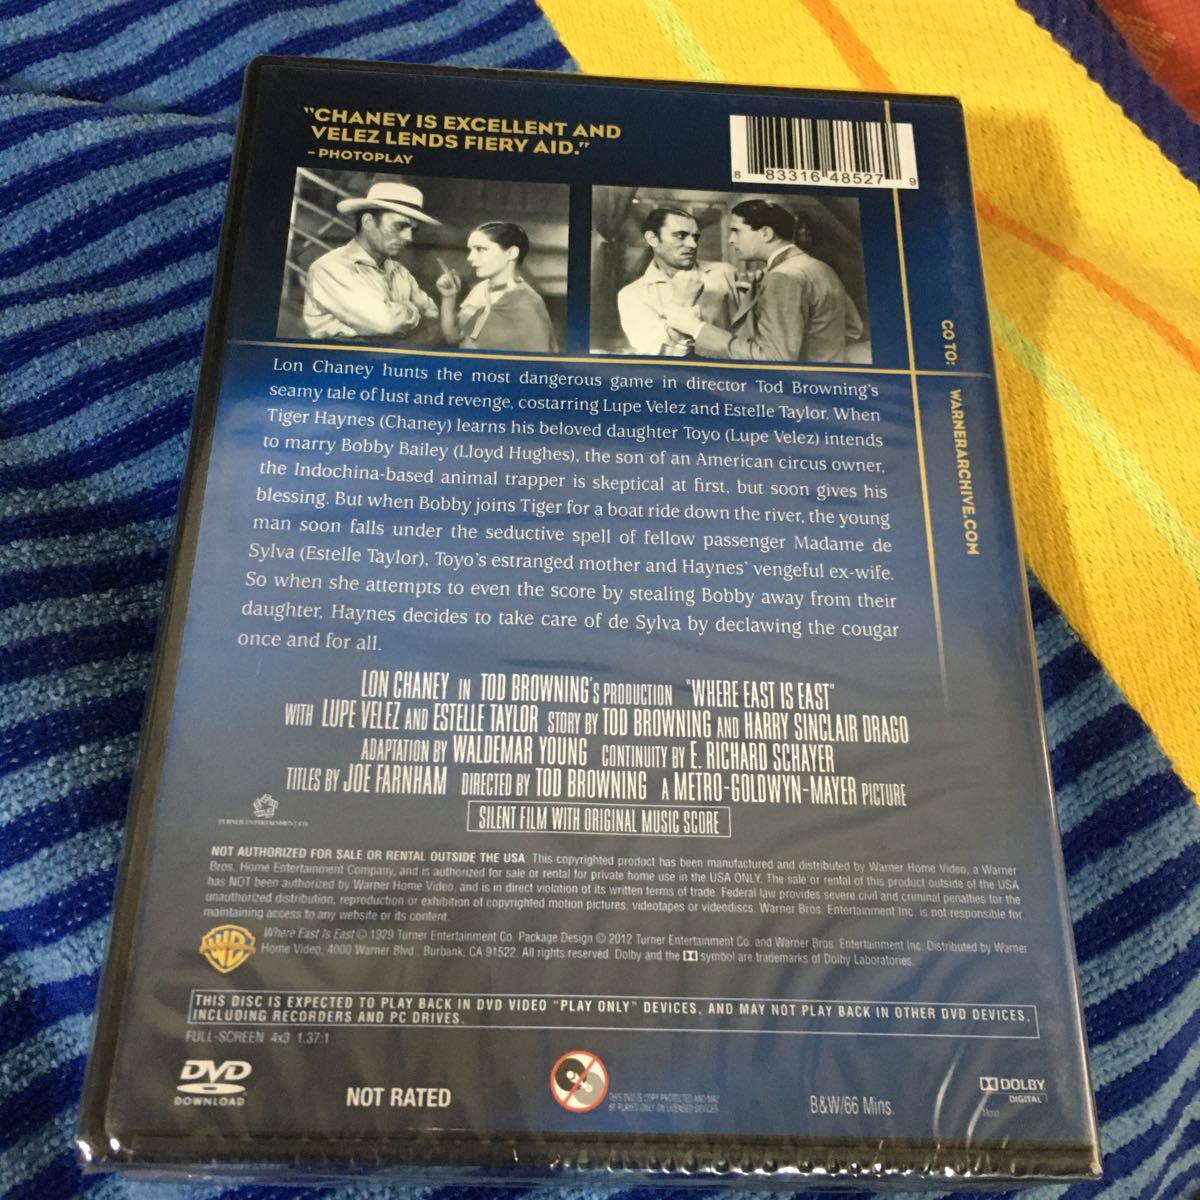 【輸入盤】DVD 獣人タイガ (1929) トッドブラウニング ロンチェイニー 誰も見たことナーイナイ 誰もさわってナーイナイ 欧米傑作カルト映画_画像2